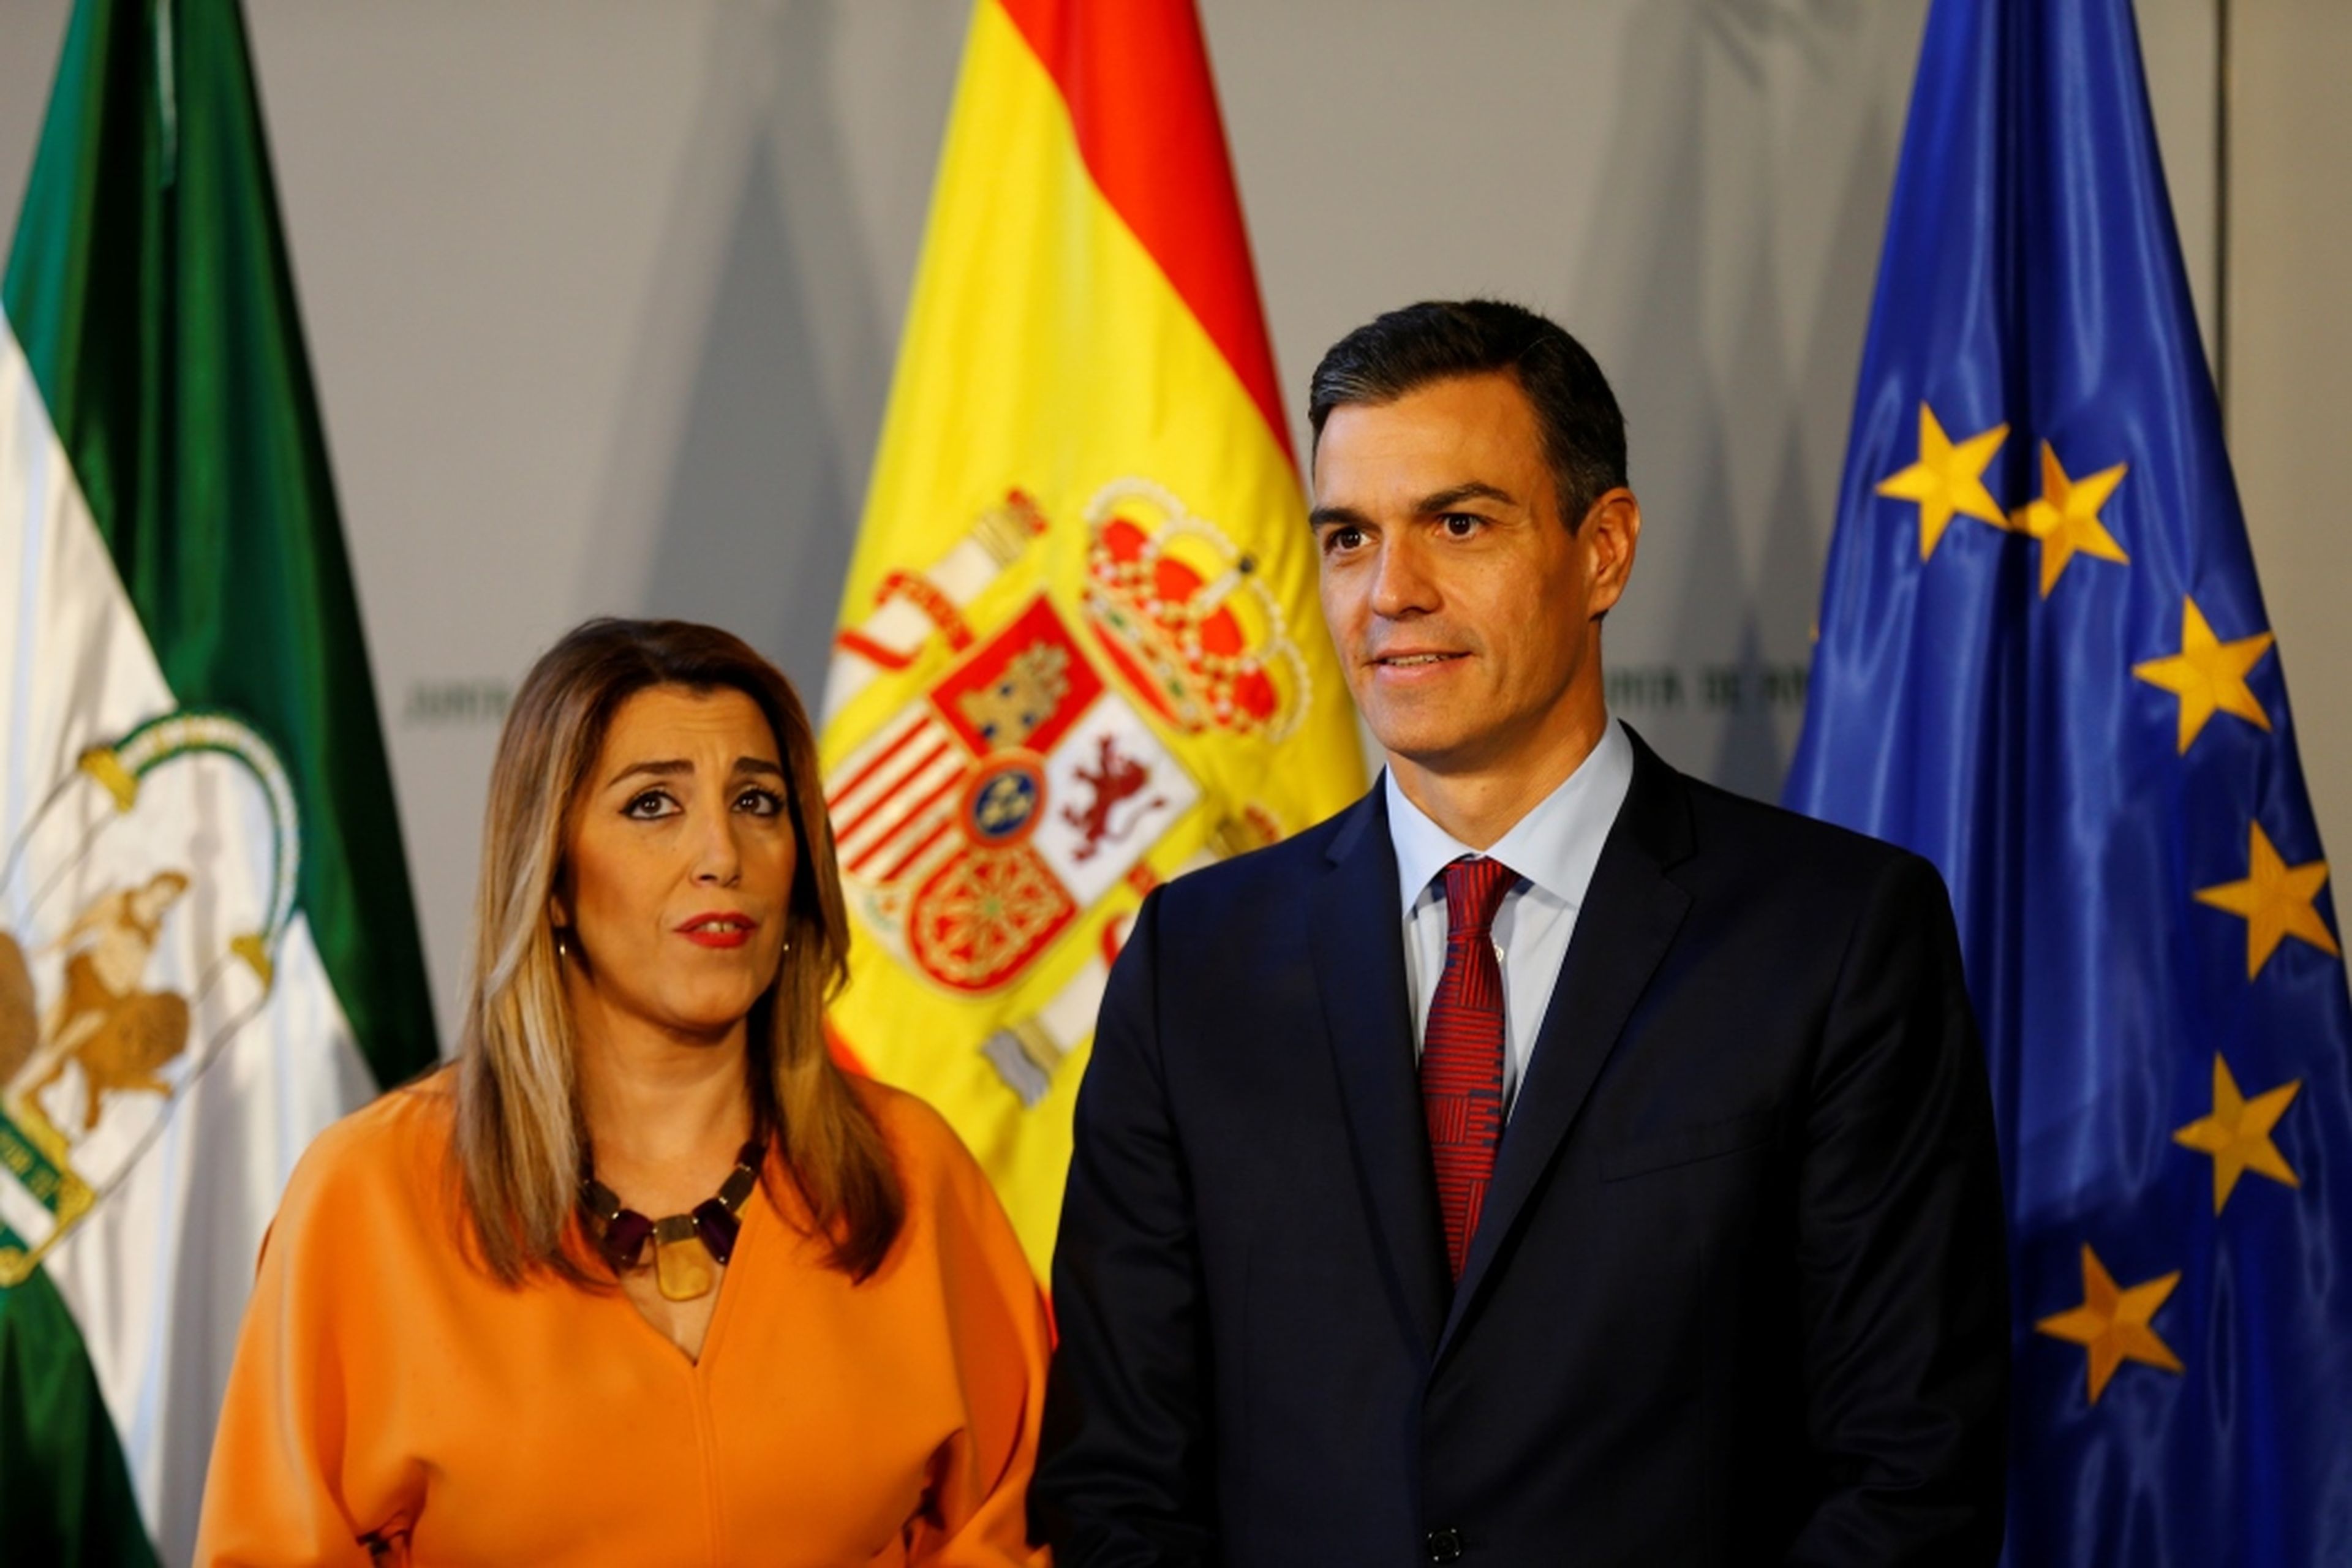 La presidenta de Andalucía, Susana Díaz, junto al presidente del Gobierno, Pedro Sánchez, en el palacio de San Telmo, Sevilla, el 26 de octubre de 2018.